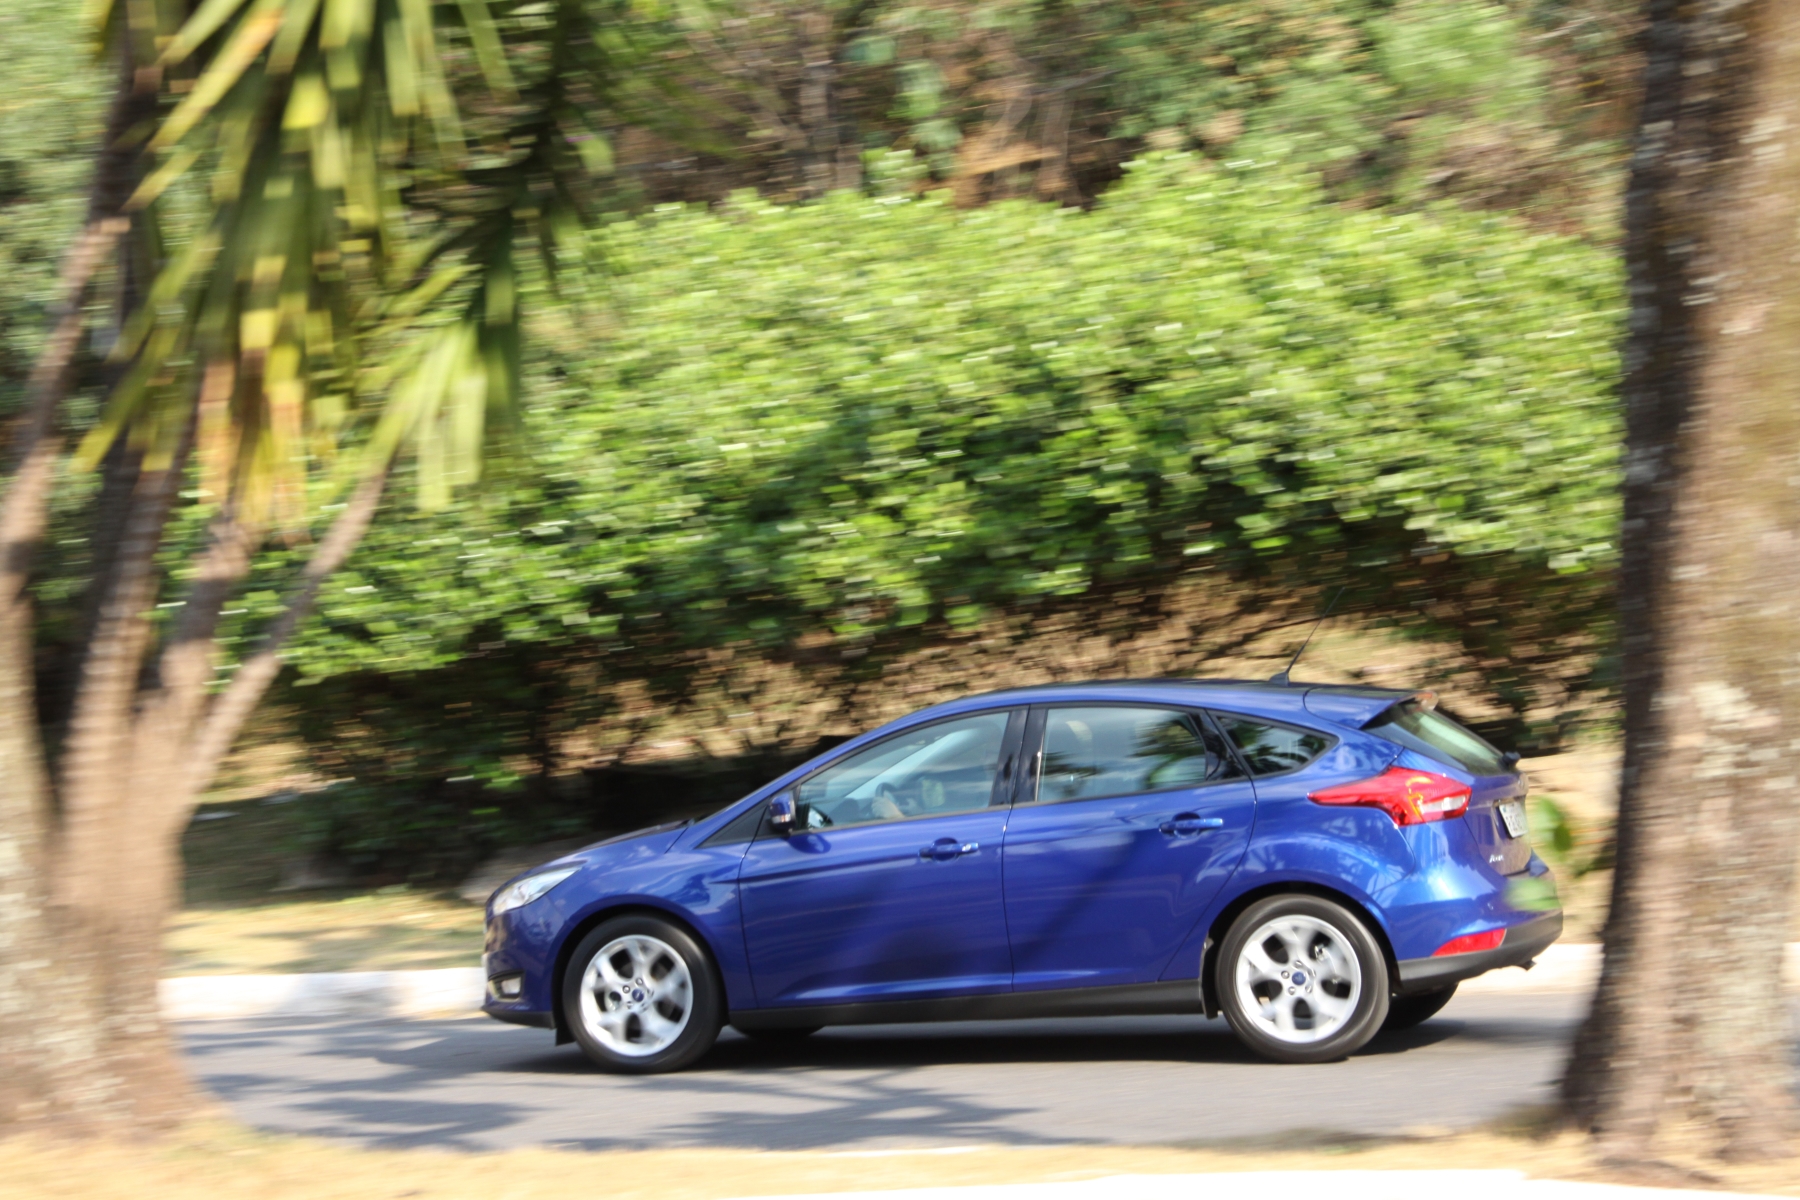 ford focus se 1.6 hatch medio modelo 2015 azul escuro de lateral no asfalto em movimento